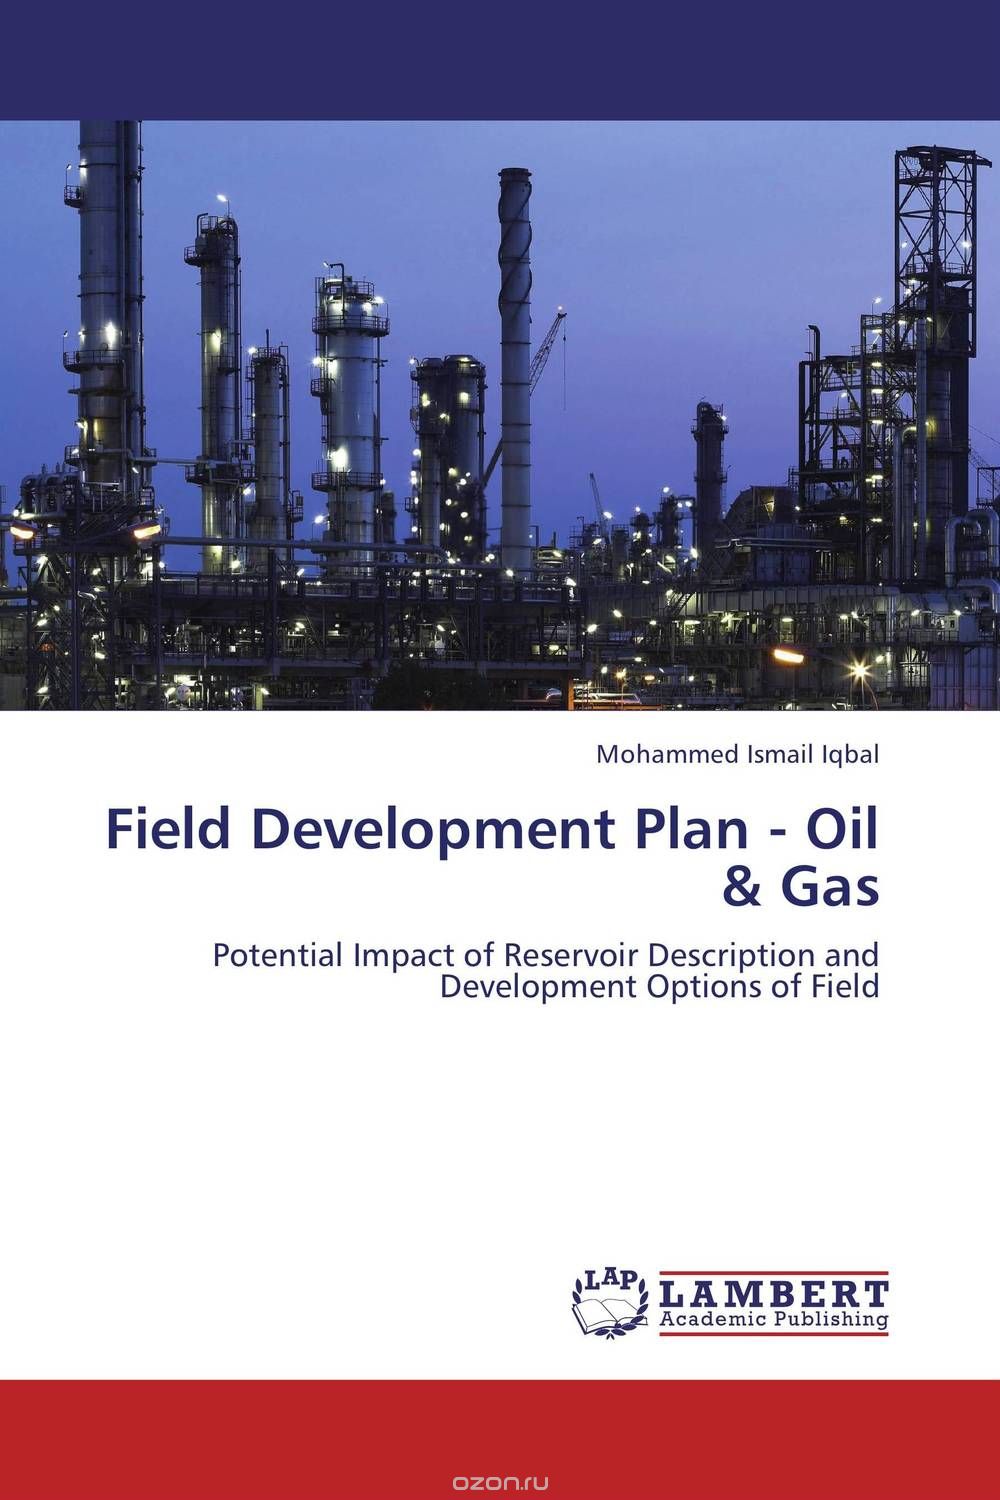 Field Development Plan - Oil & Gas